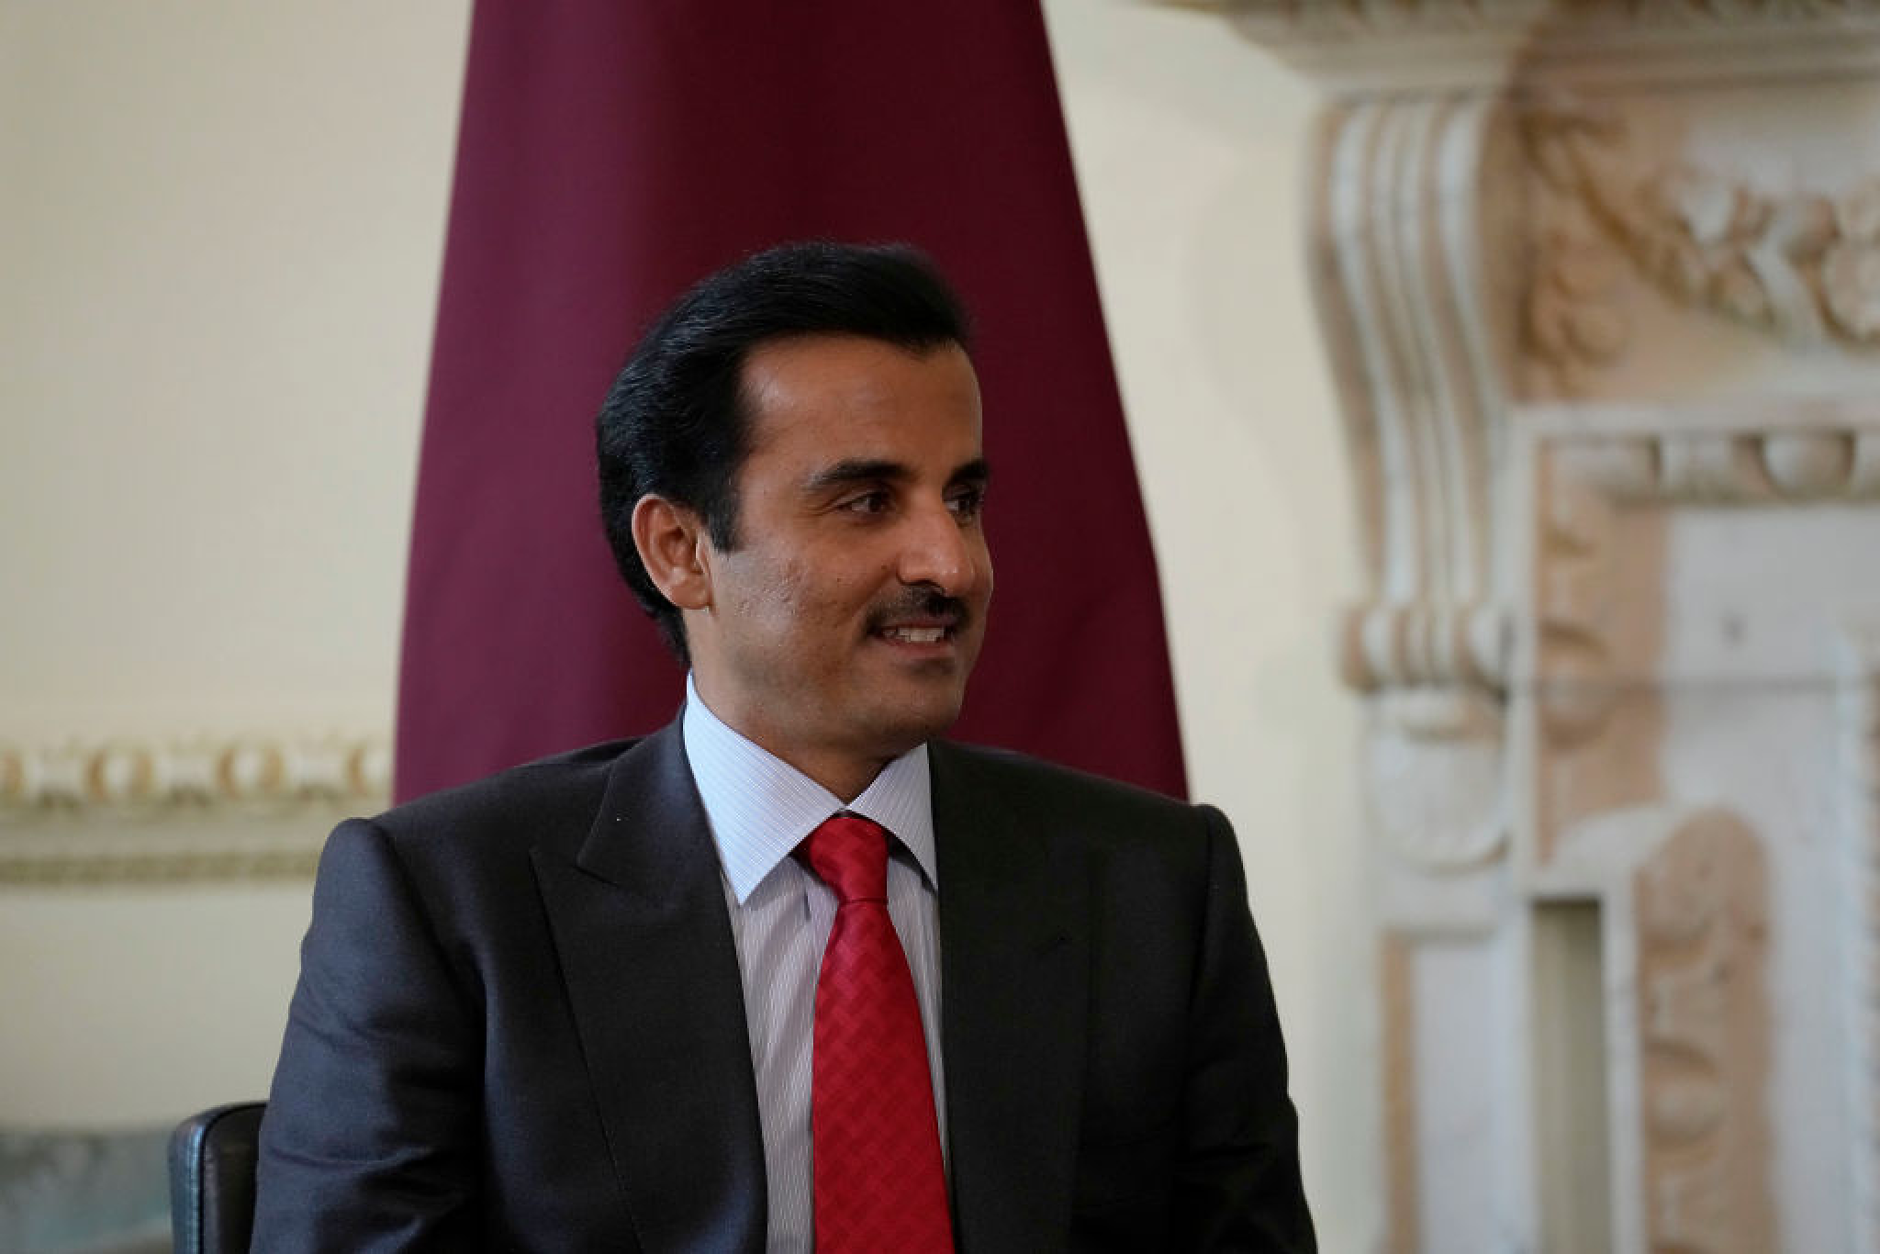 Катар ще отпусне 60 милиона долара в помощ на най-слабо развитите страни